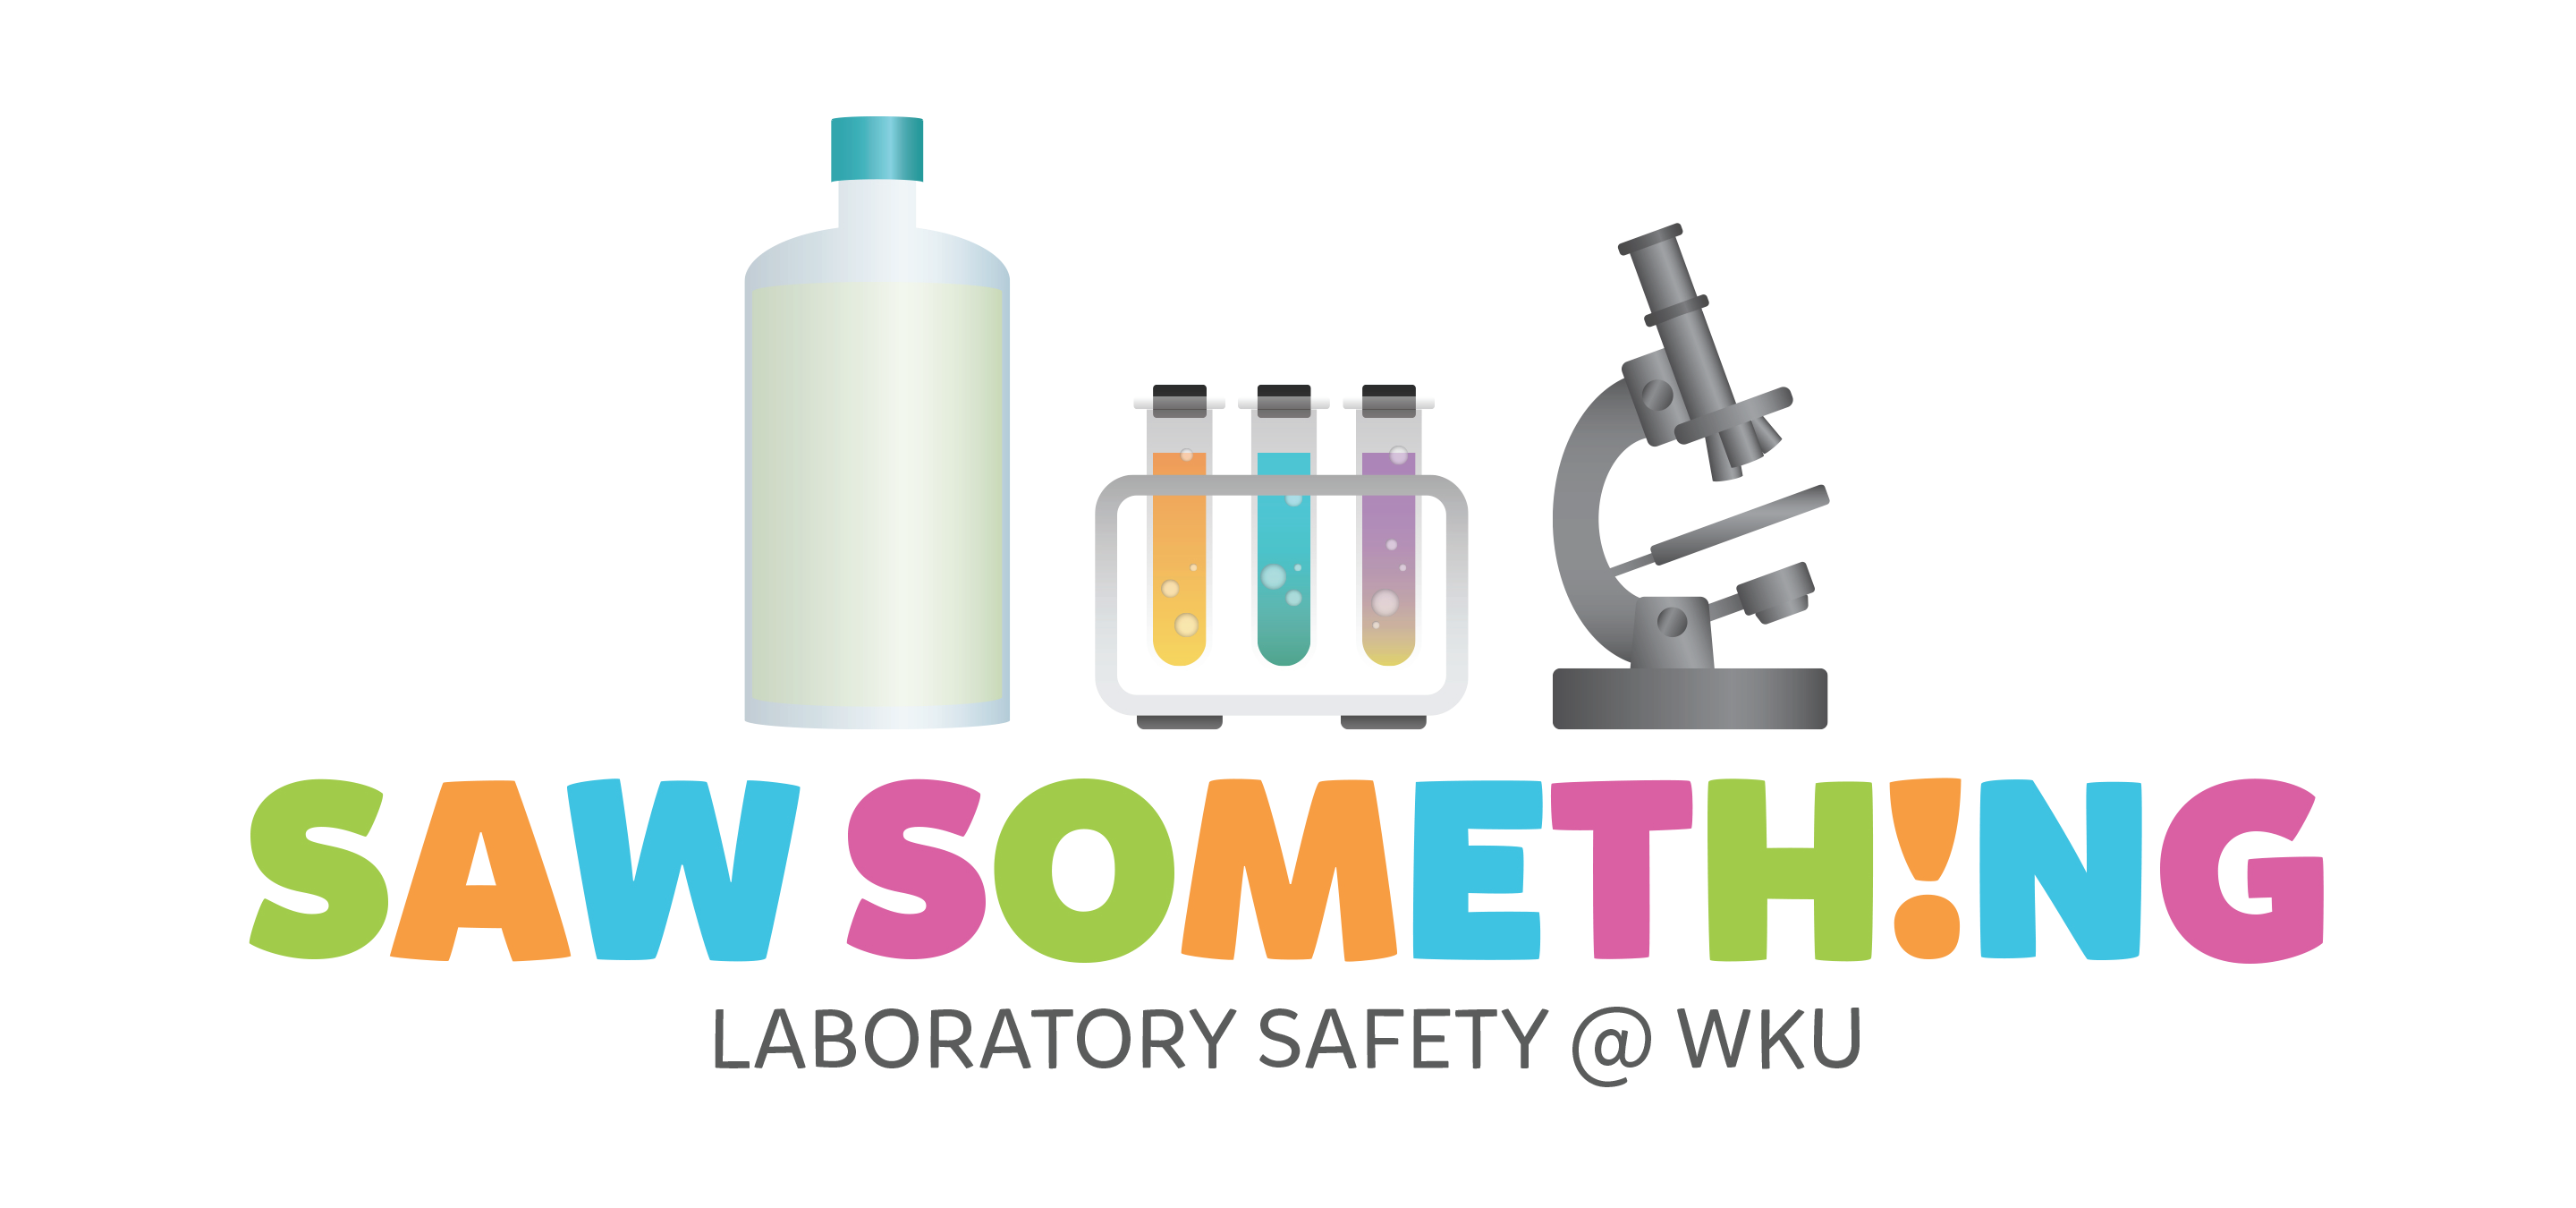 Saw Something Lab Safety Logo